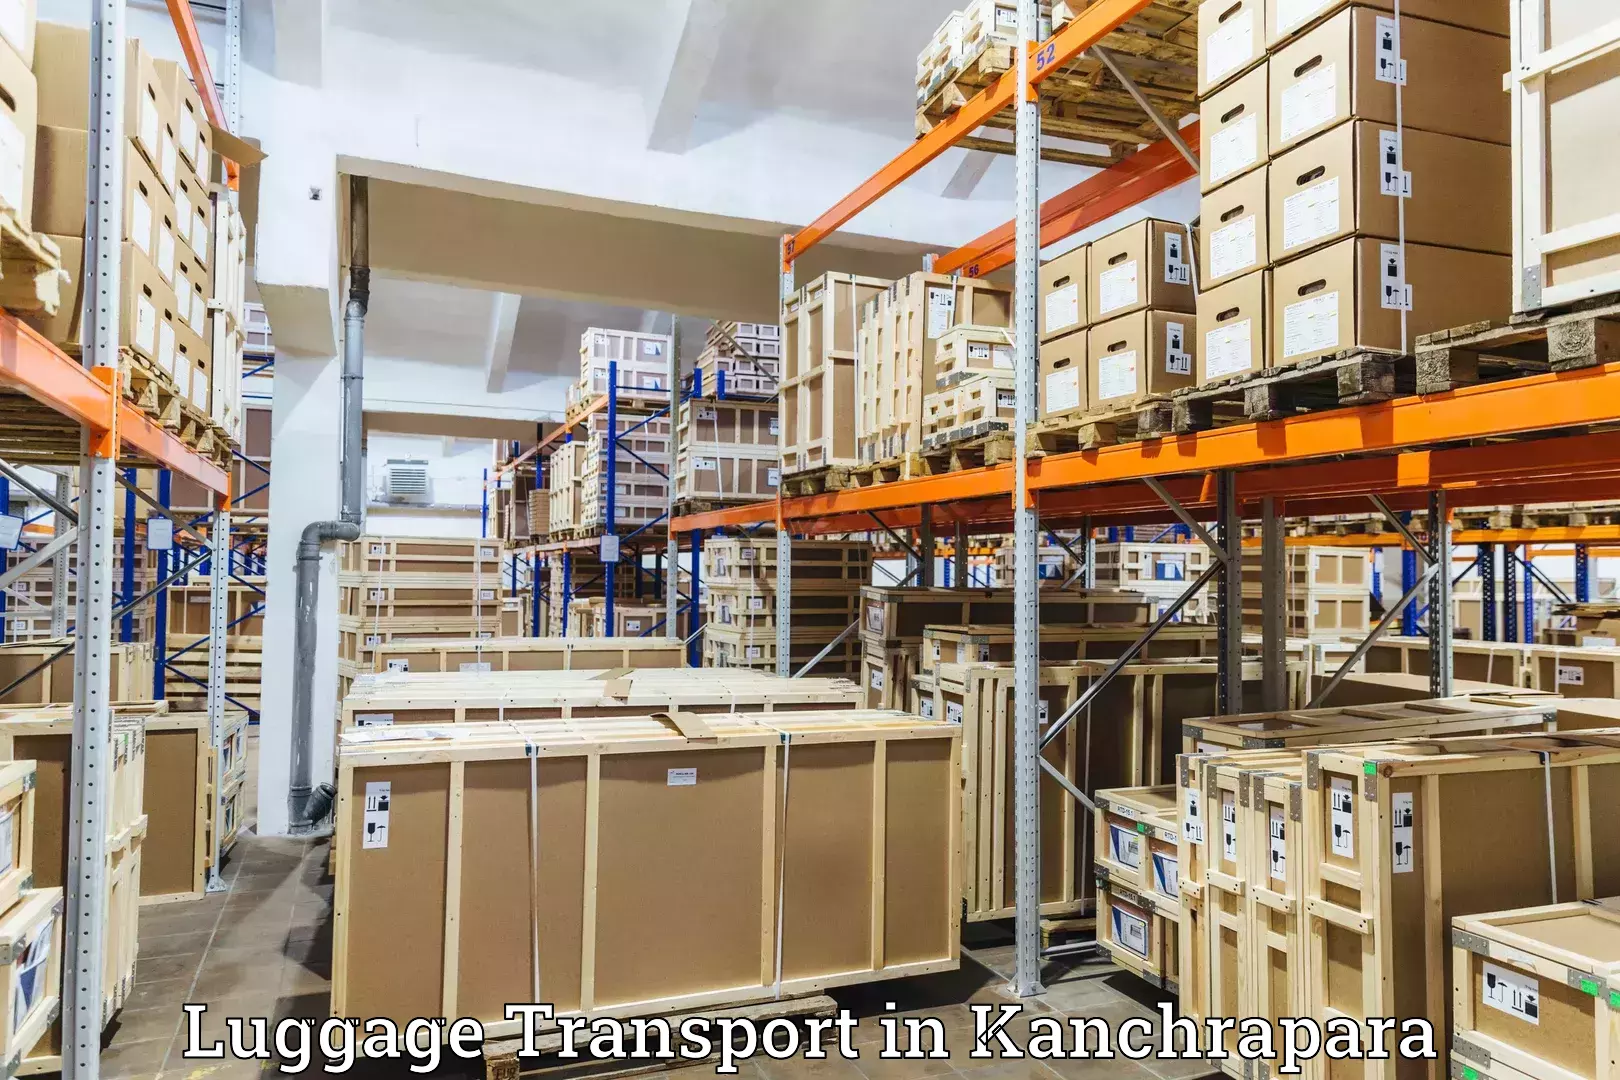 Luggage transport logistics in Kanchrapara